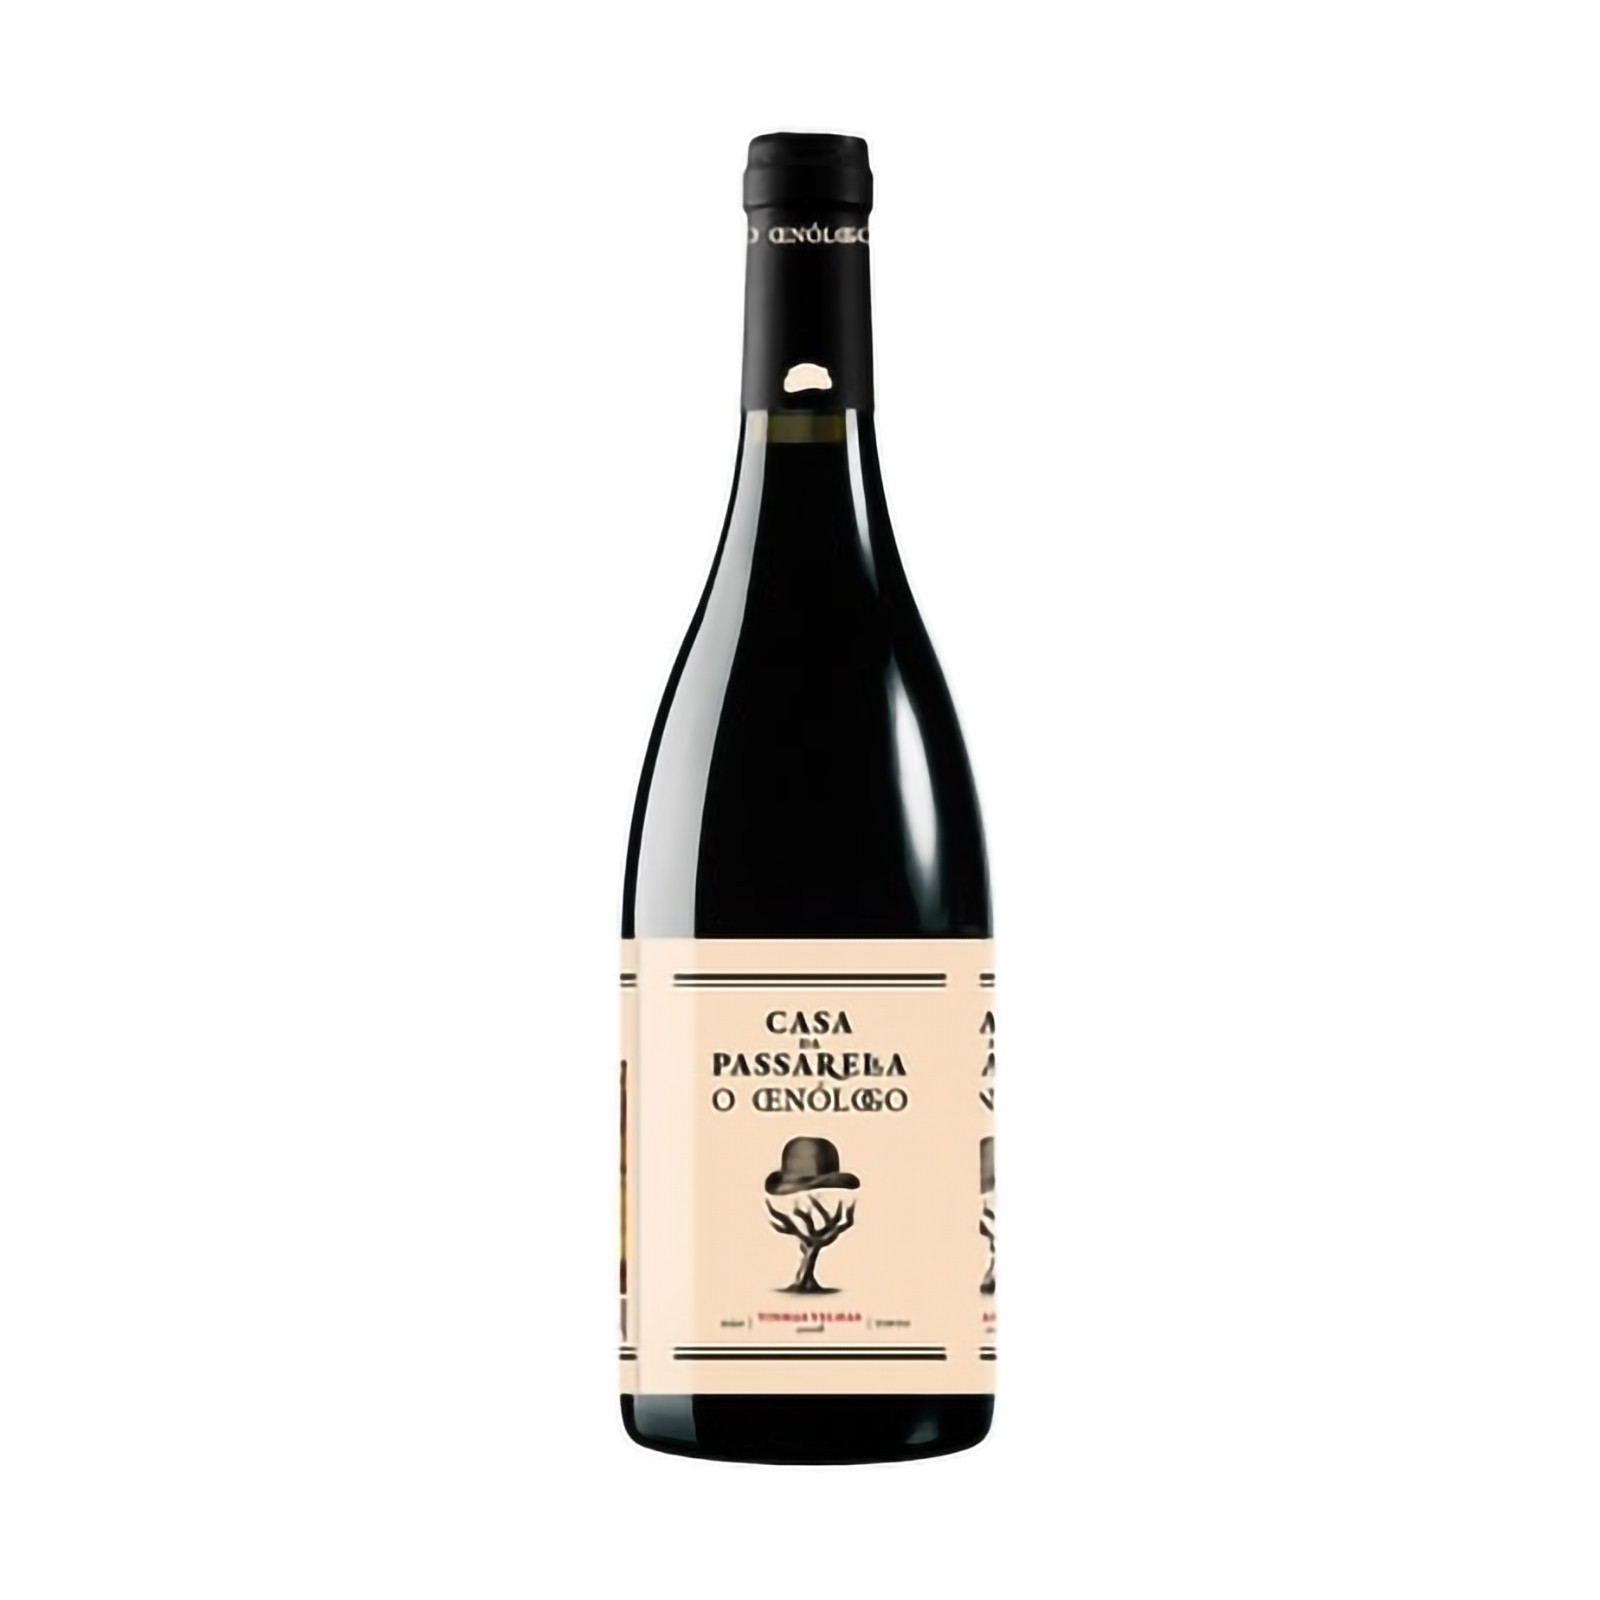 Casa da Passarella O Enólogo Old Vines Tinto 2019